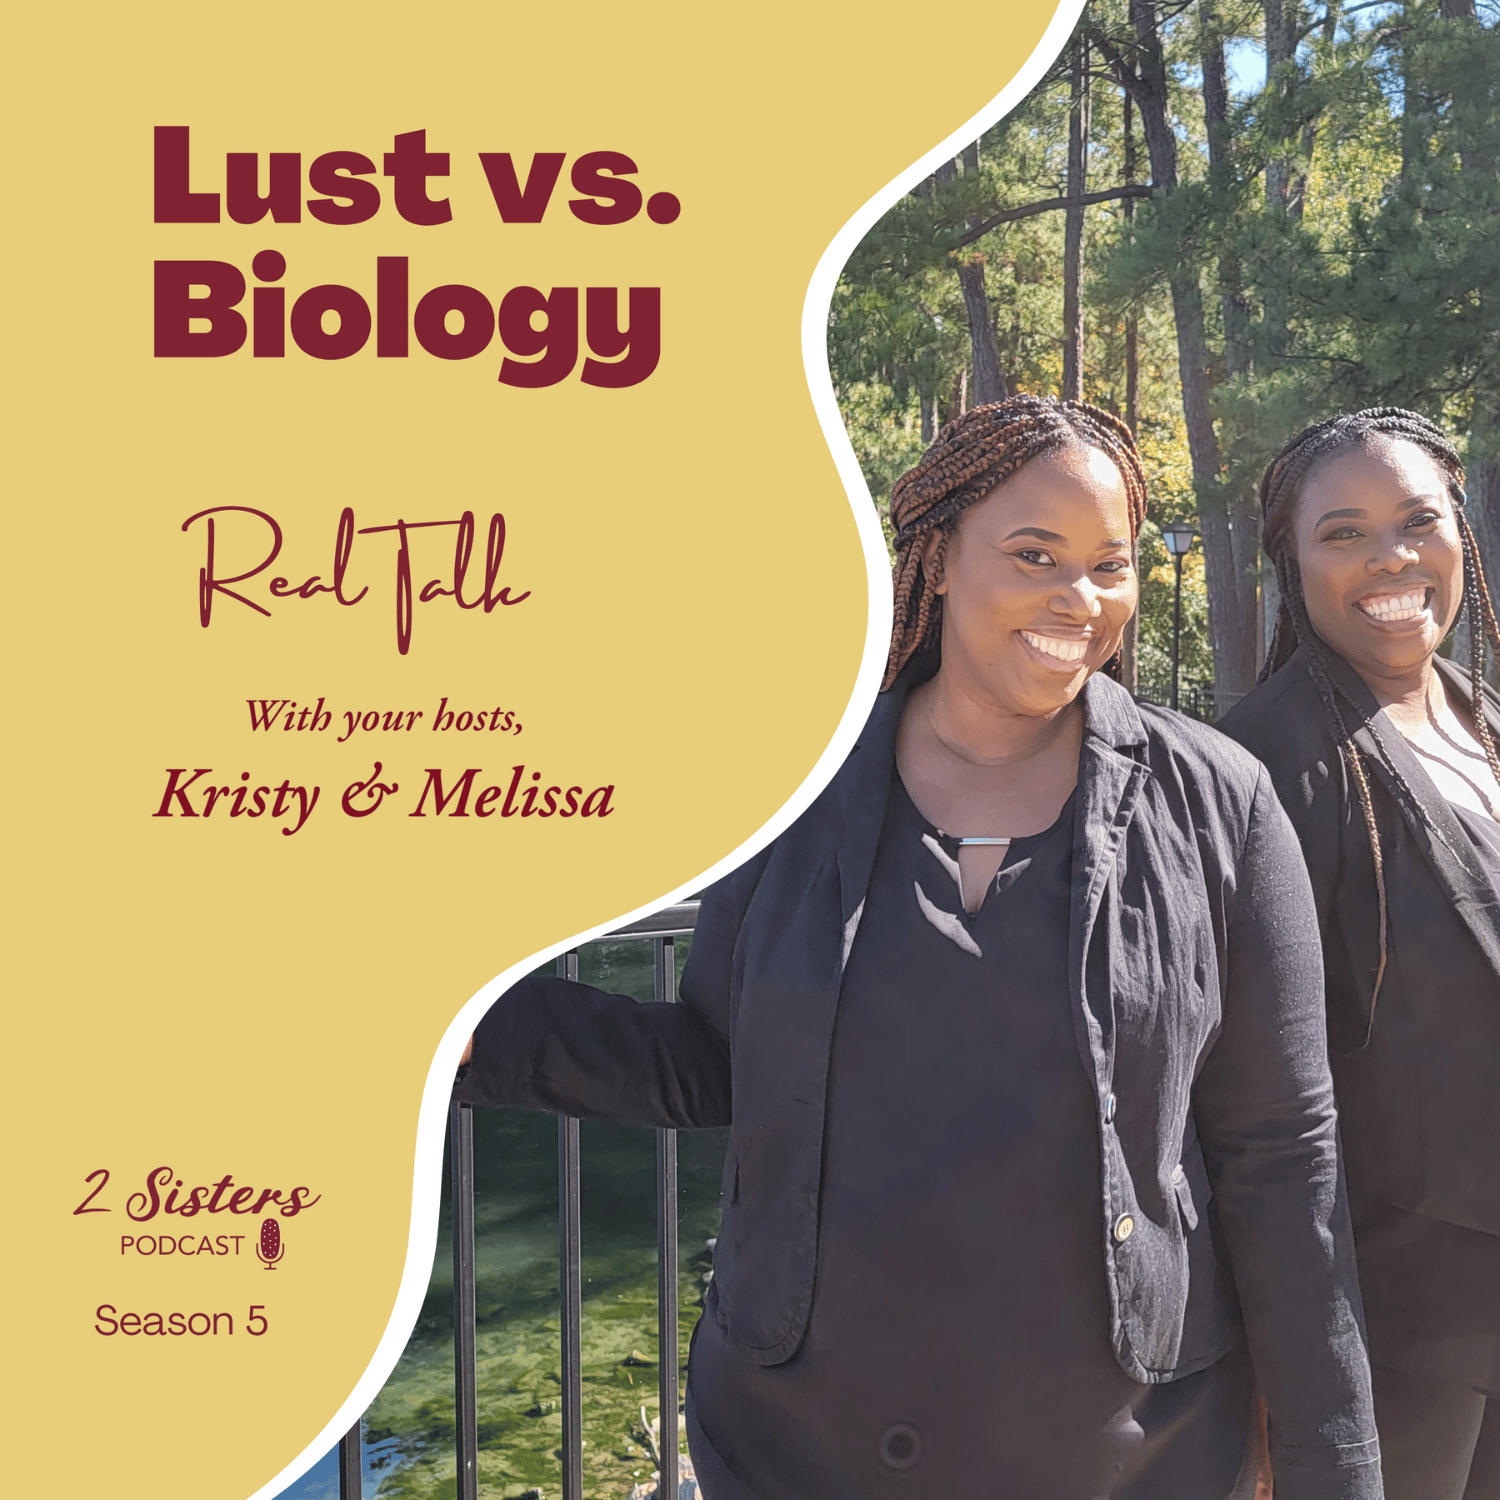 Lust vs. Biology